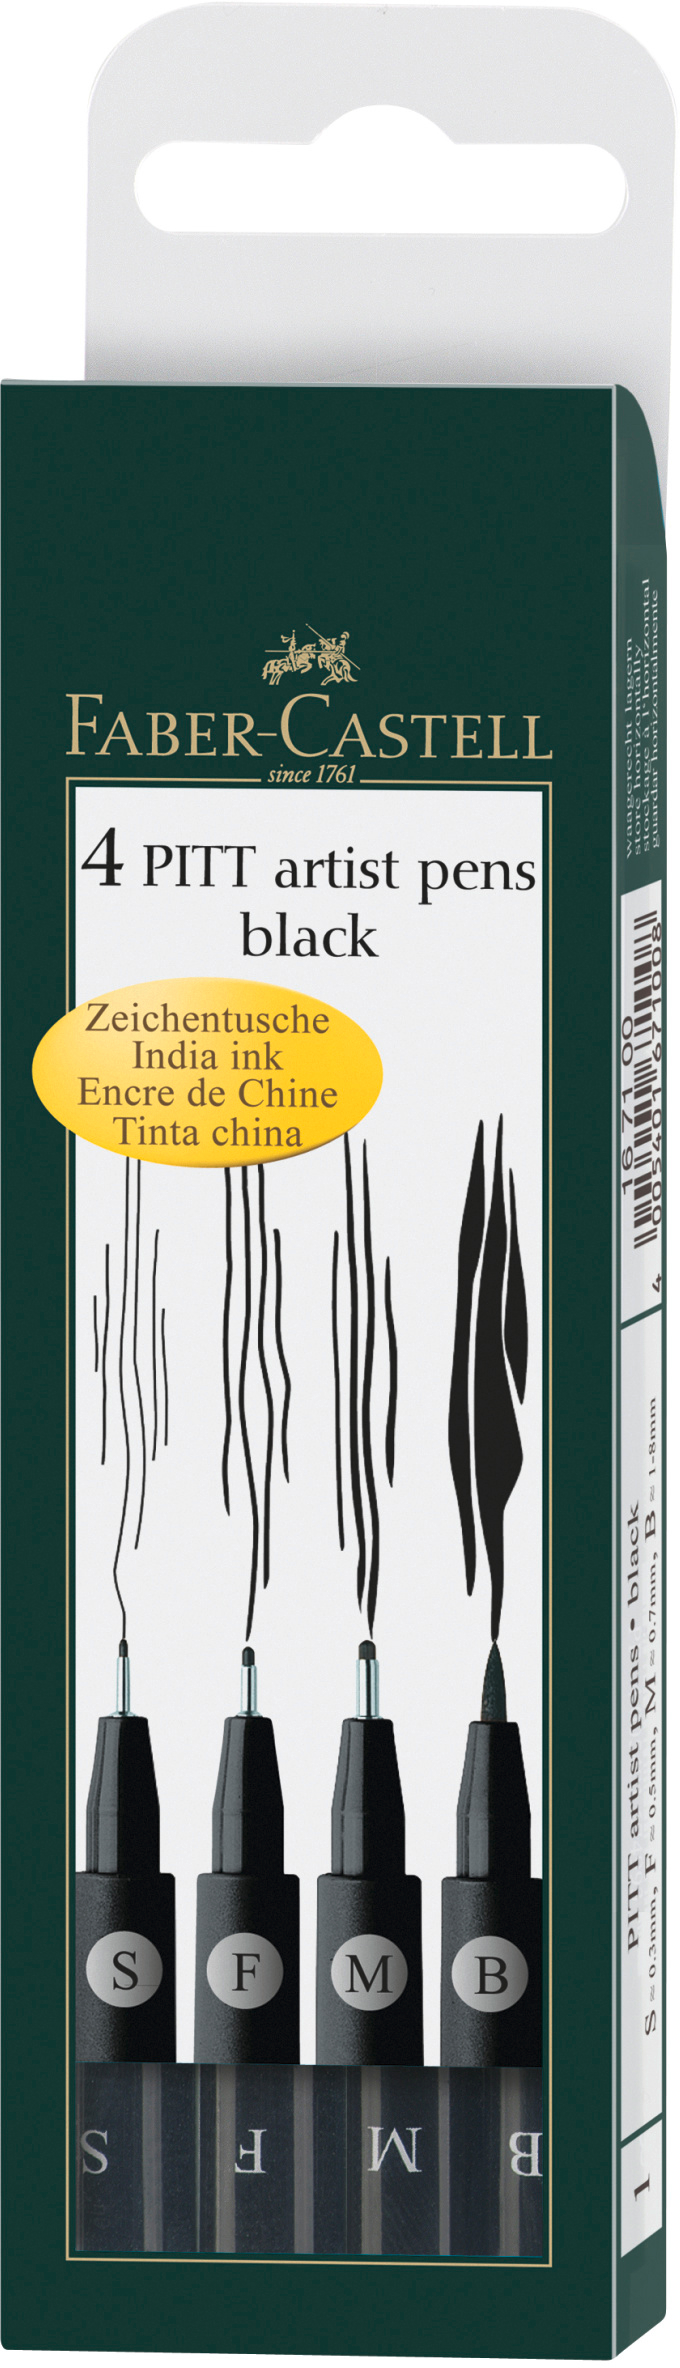 FABER-CASTELL Pitt Artist Pen 167100 noir 4 pcs.